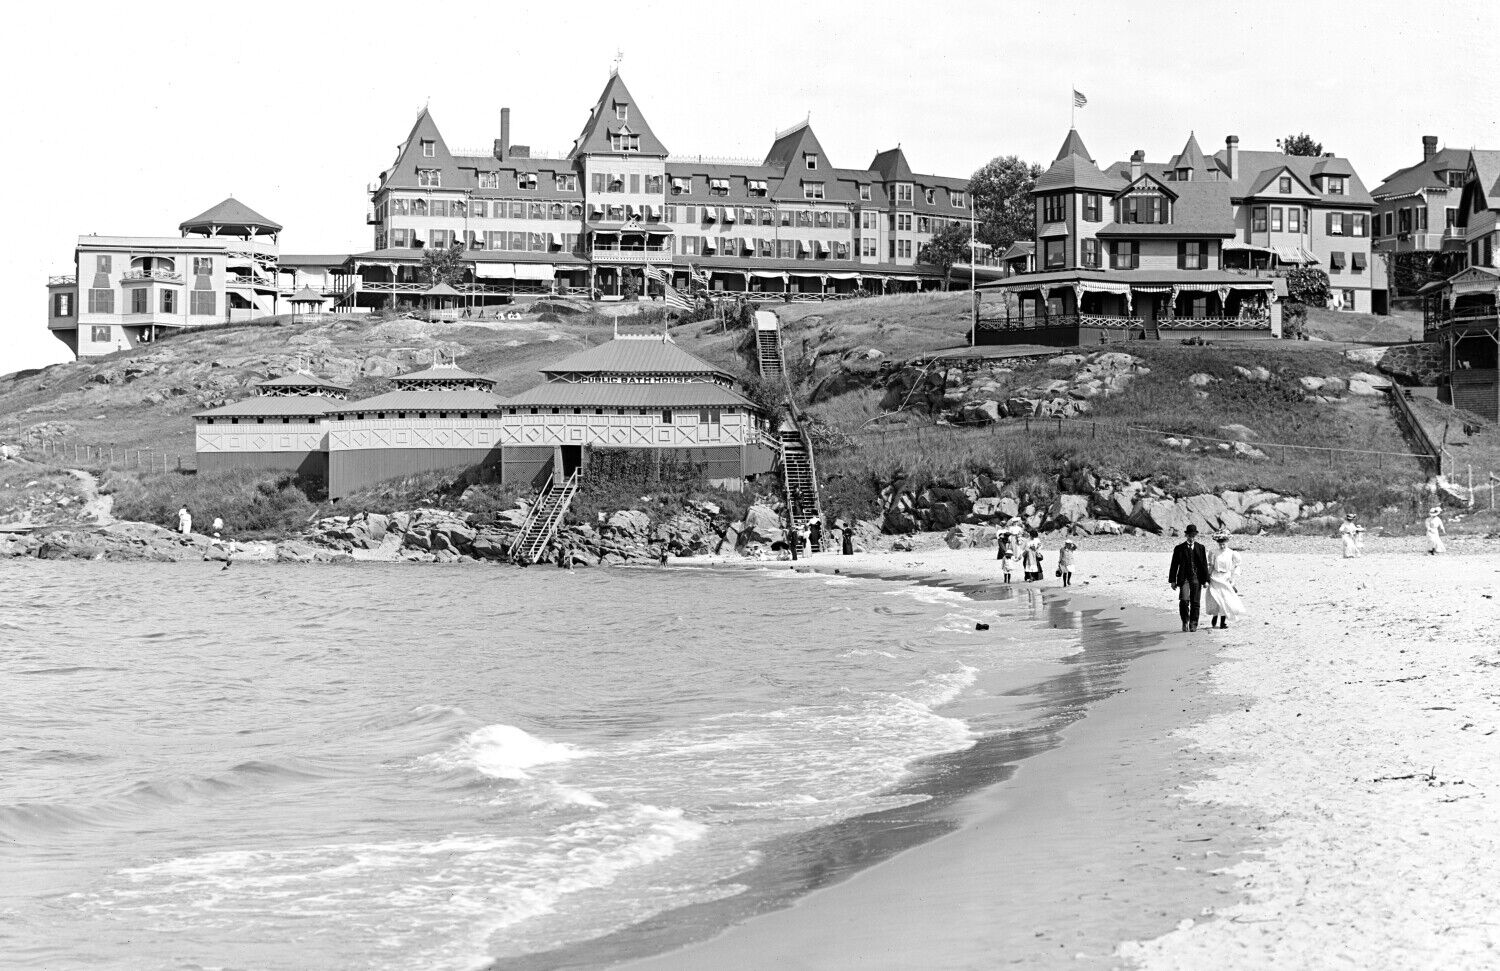 1900-1910 Atlantic House Nantasket Beach MA Vintage Photograph 11\